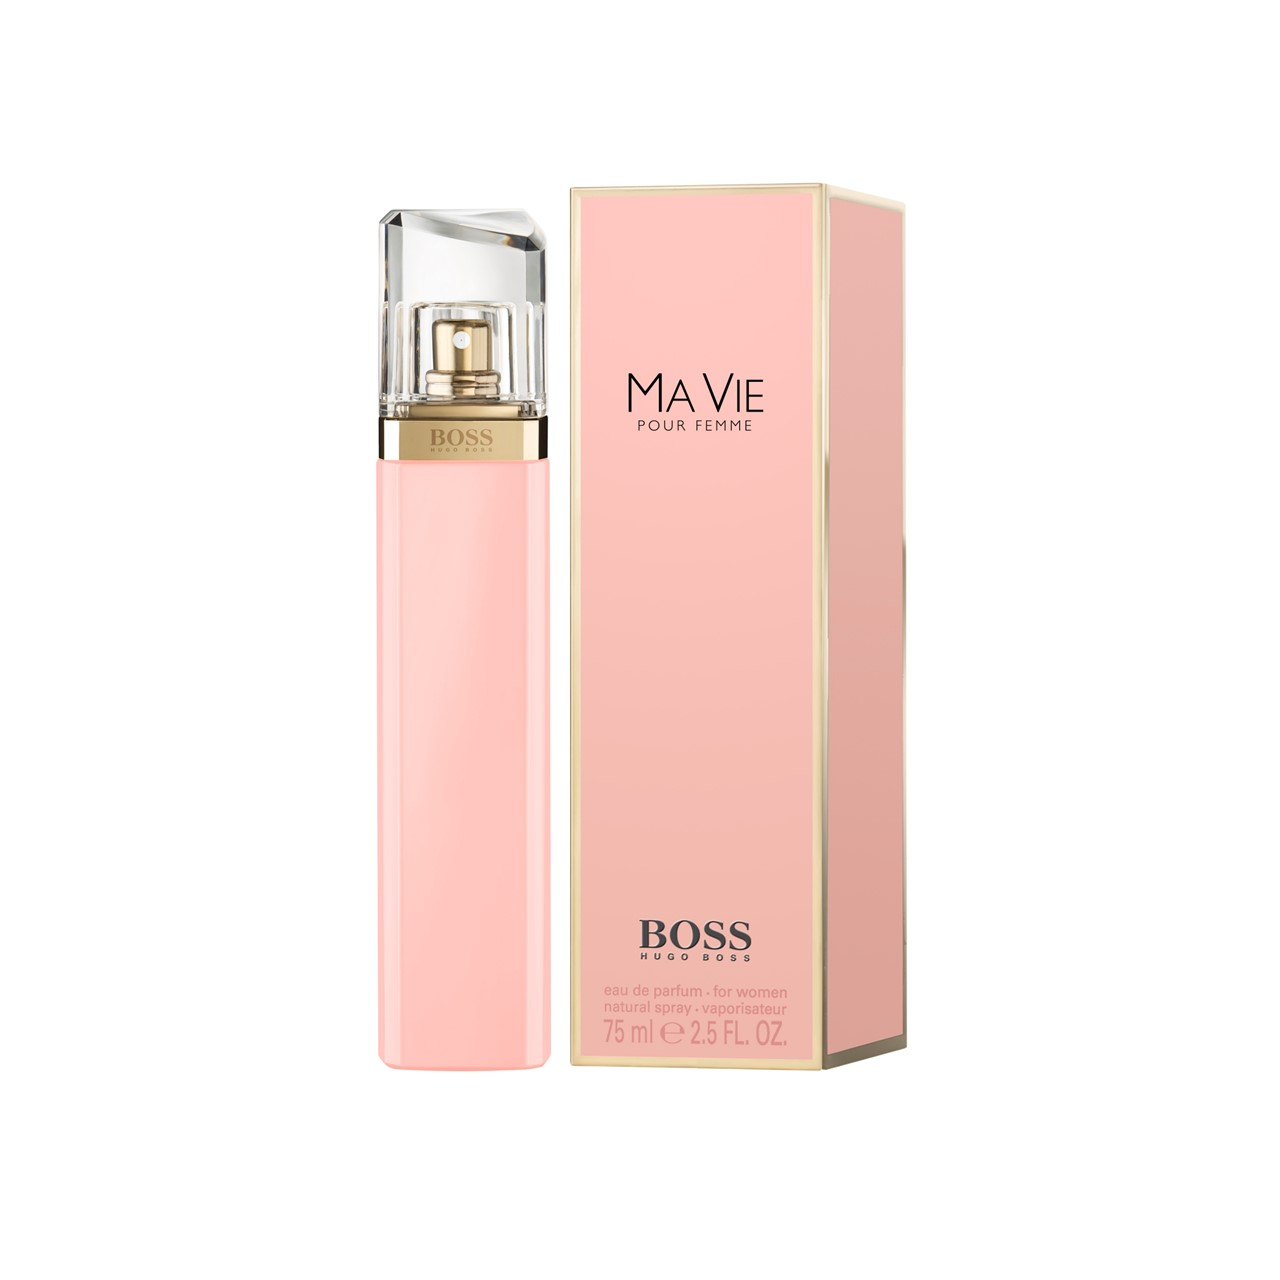 Hugo Boss Boss Ma Vie Pour Femme Eau de Parfum 75ml (2.5fl oz)